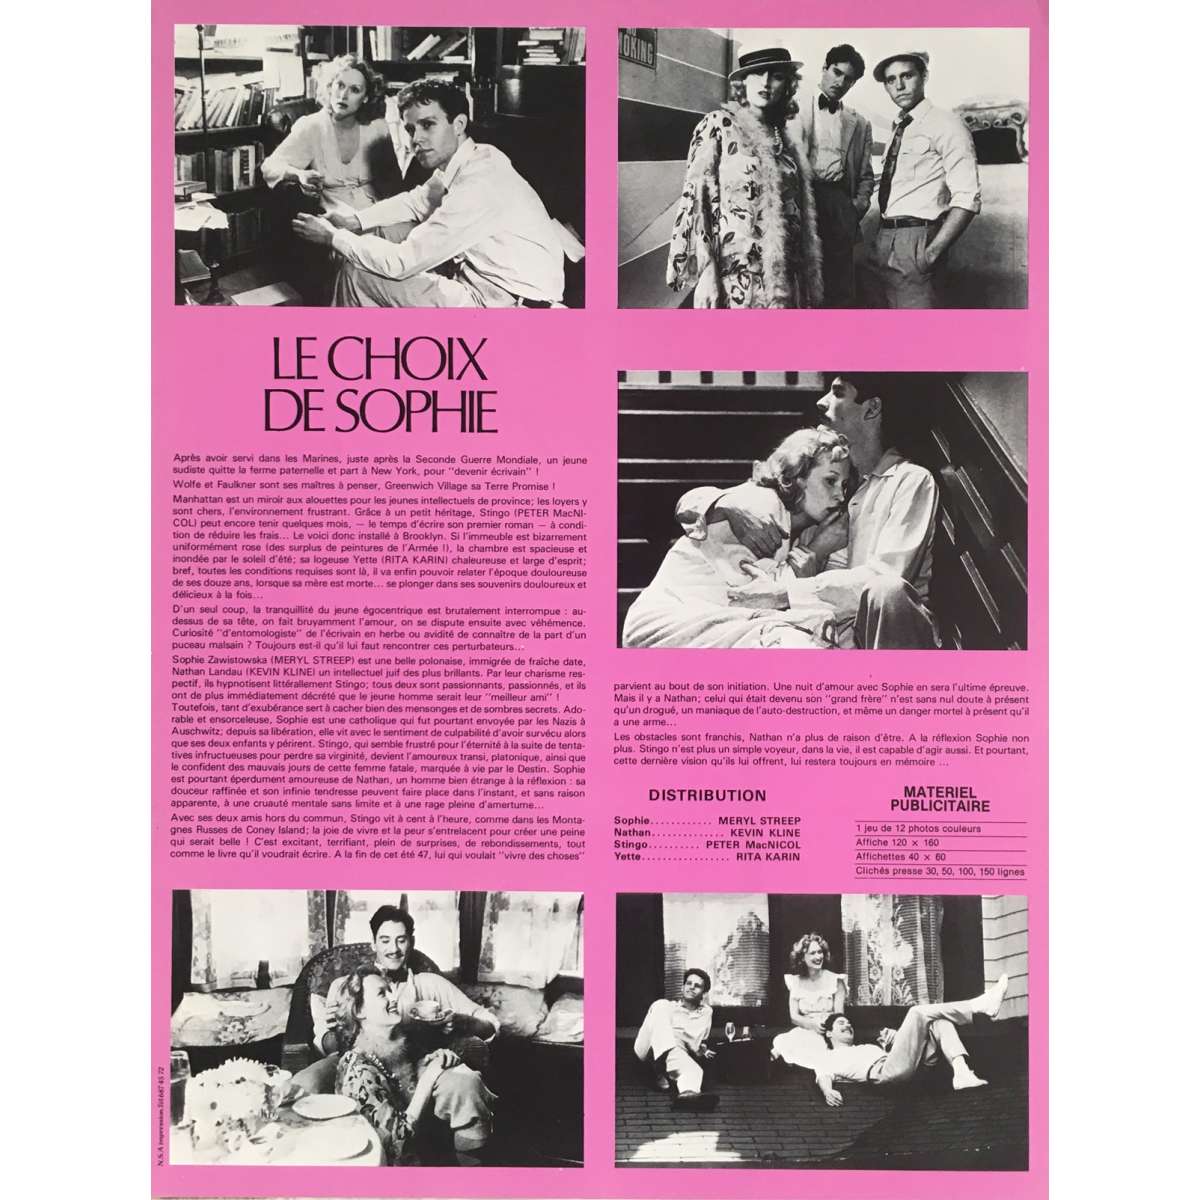 LE CHOIX DE SOPHIE (1982) - Film 